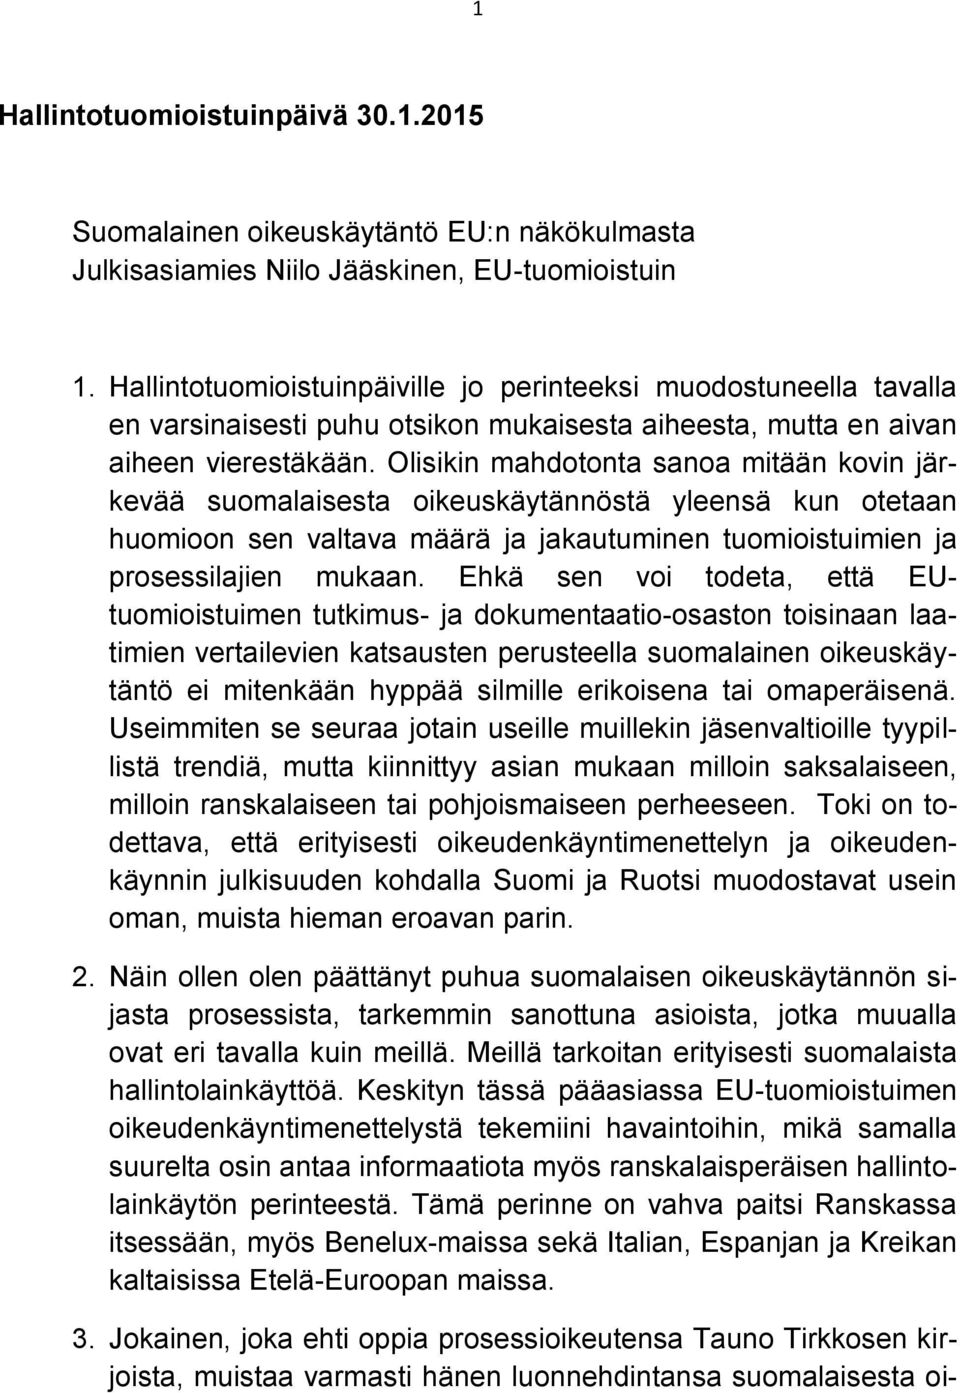 Olisikin mahdotonta sanoa mitään kovin järkevää suomalaisesta oikeuskäytännöstä yleensä kun otetaan huomioon sen valtava määrä ja jakautuminen tuomioistuimien ja prosessilajien mukaan.